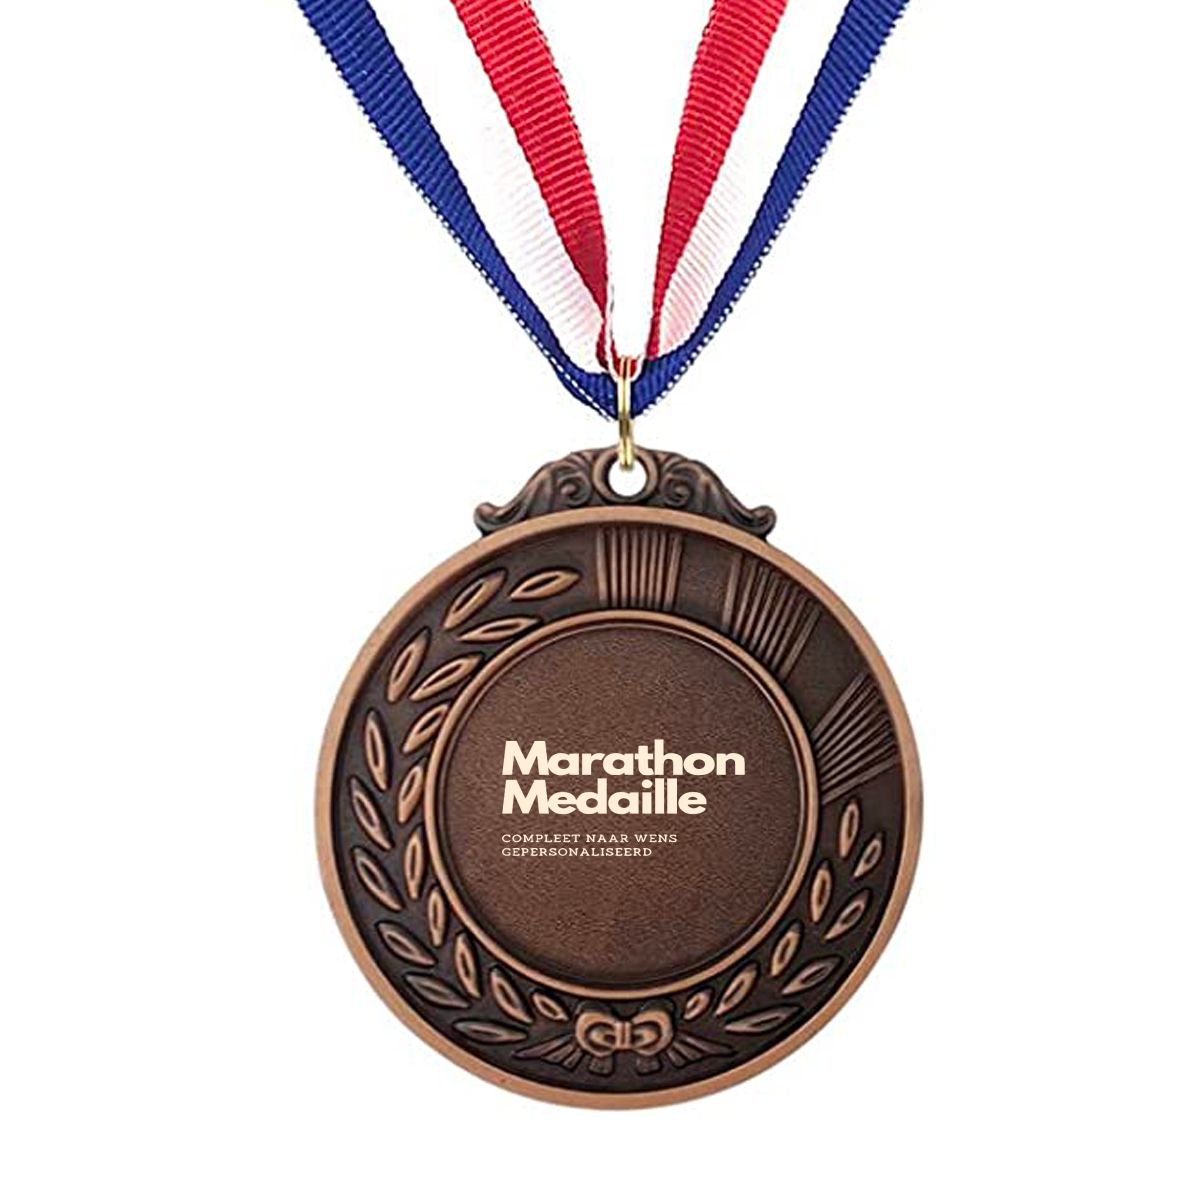 4 daagse medailles - marathon medailles gepersonaliseerd - medaille 🥇🥈🥉